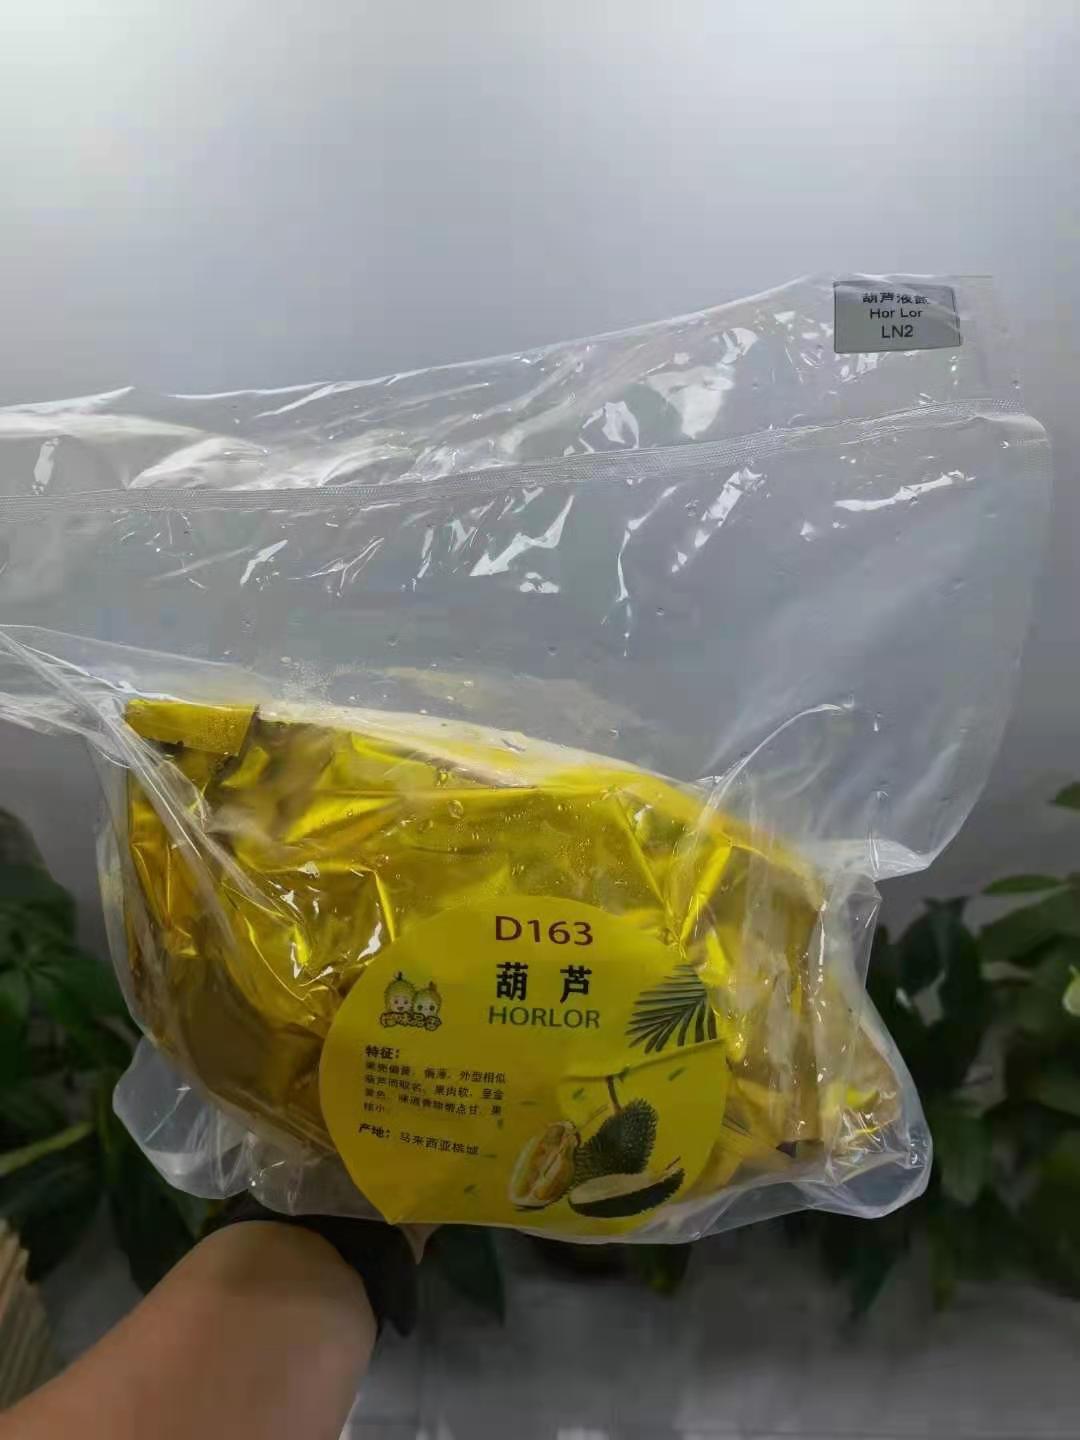 公司在马来西亚拥有自己的果园，直接进口到国内，质量三包，各类整果都有，10kg/件，接受预定！
猫山王液氮果批发价：1050/件（不含运费）
黑刺液氮果：1